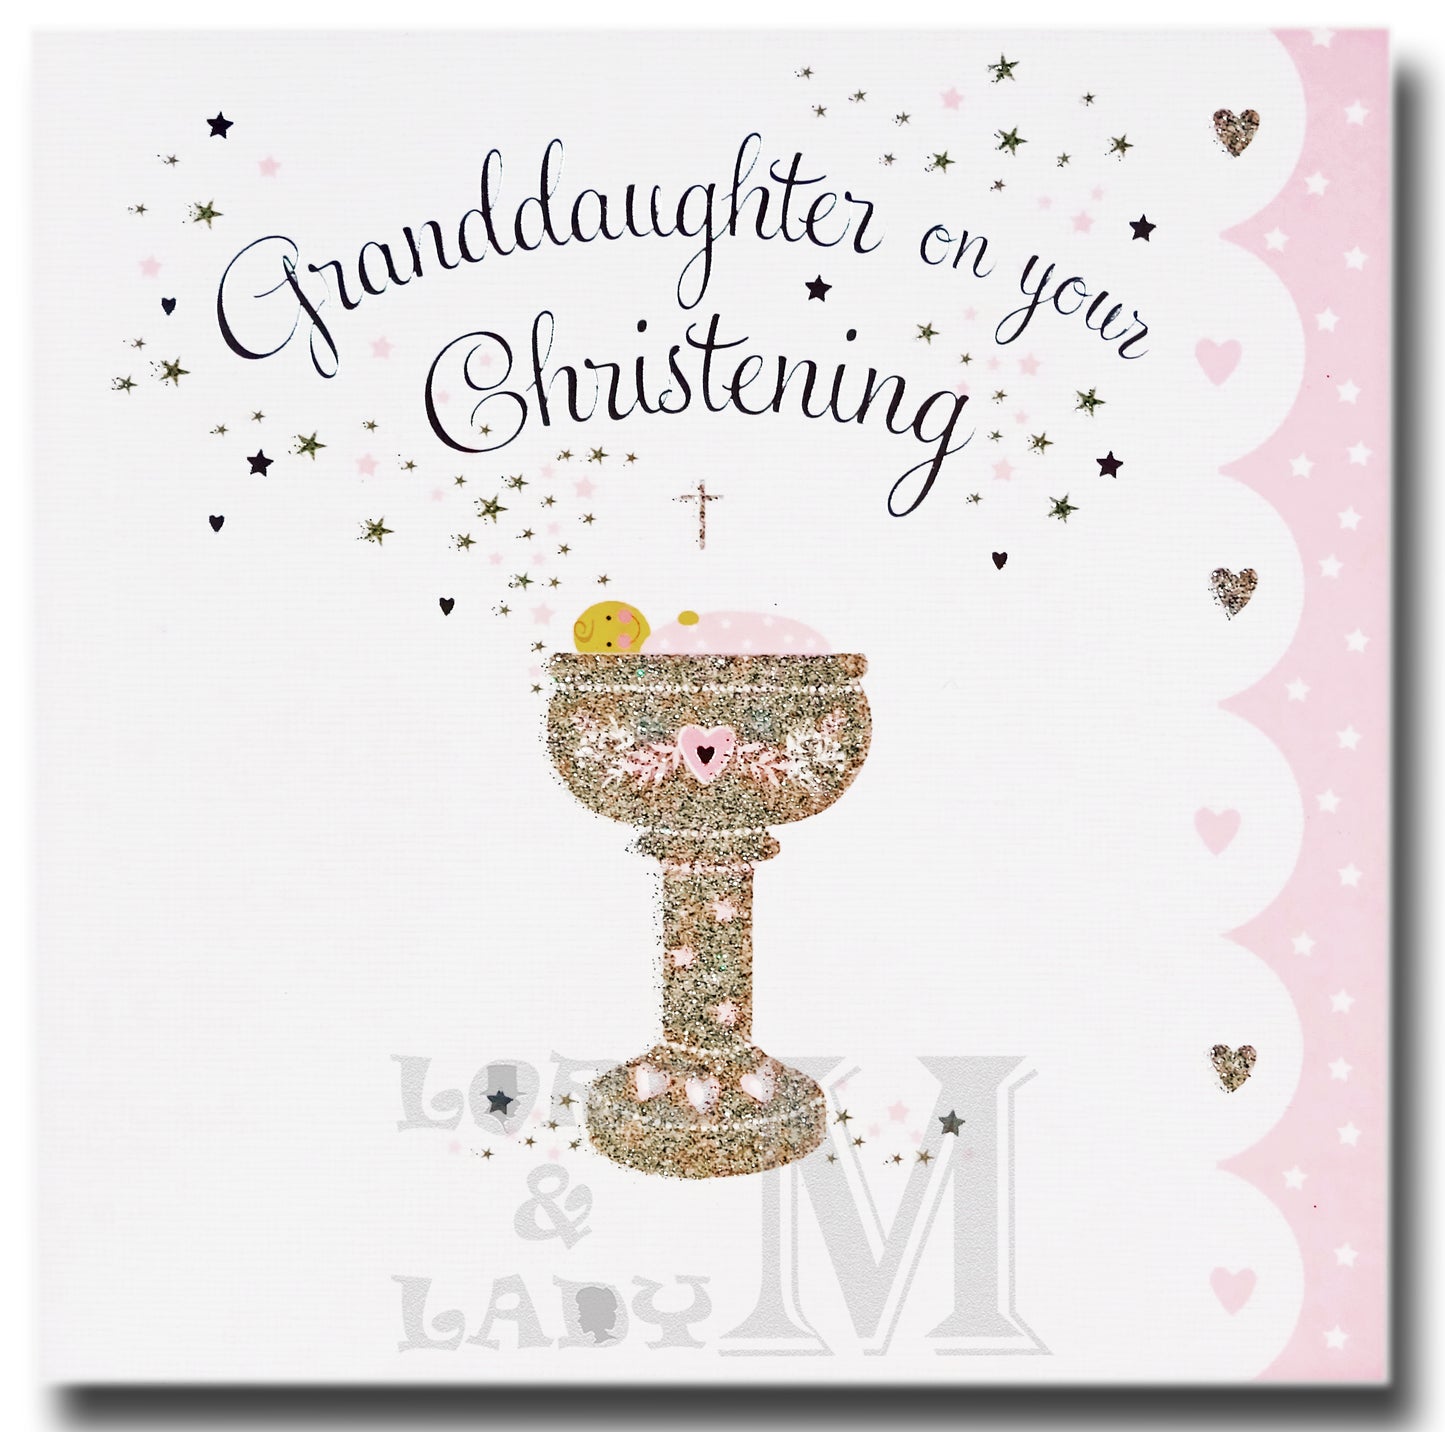 16cm - Granddaughter On Your Christening - E